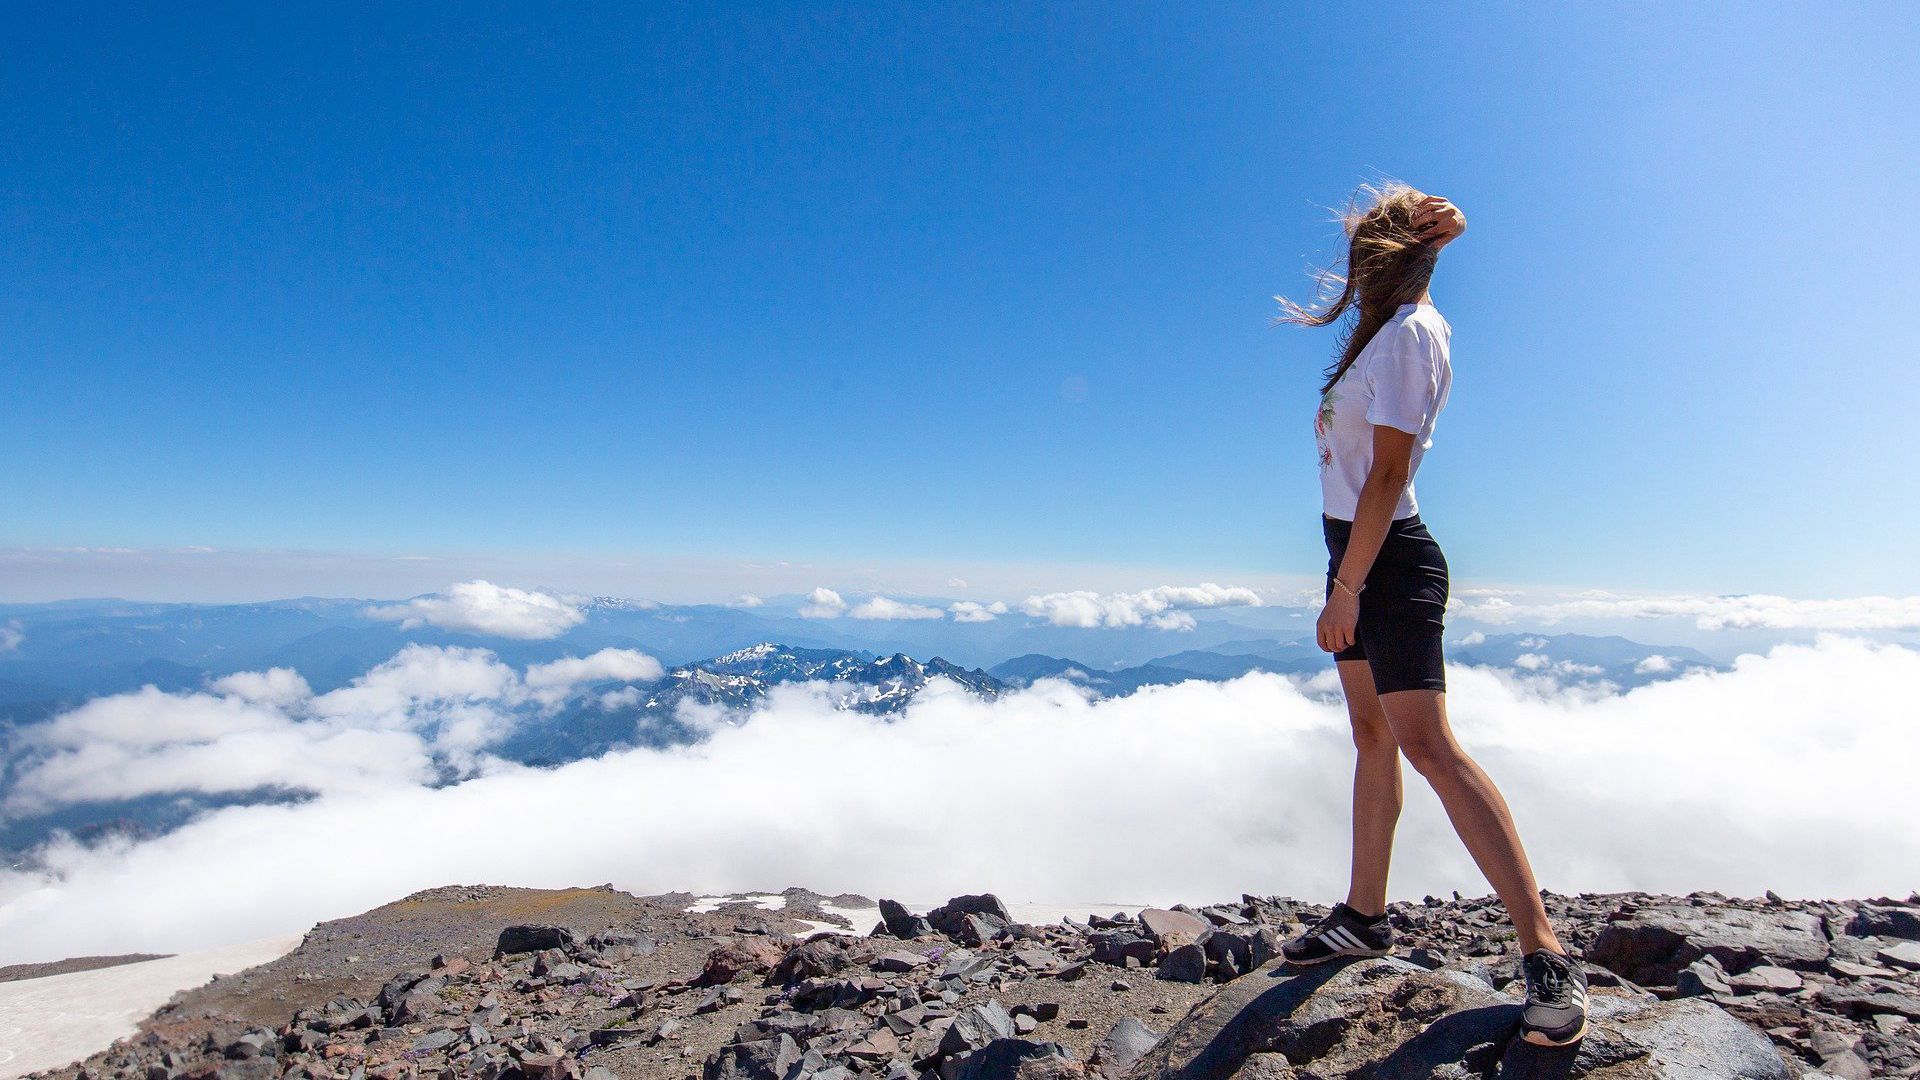 高峰景色，登上山顶的欧美运动美女高清壁纸图片 云雾缭绕的山峰